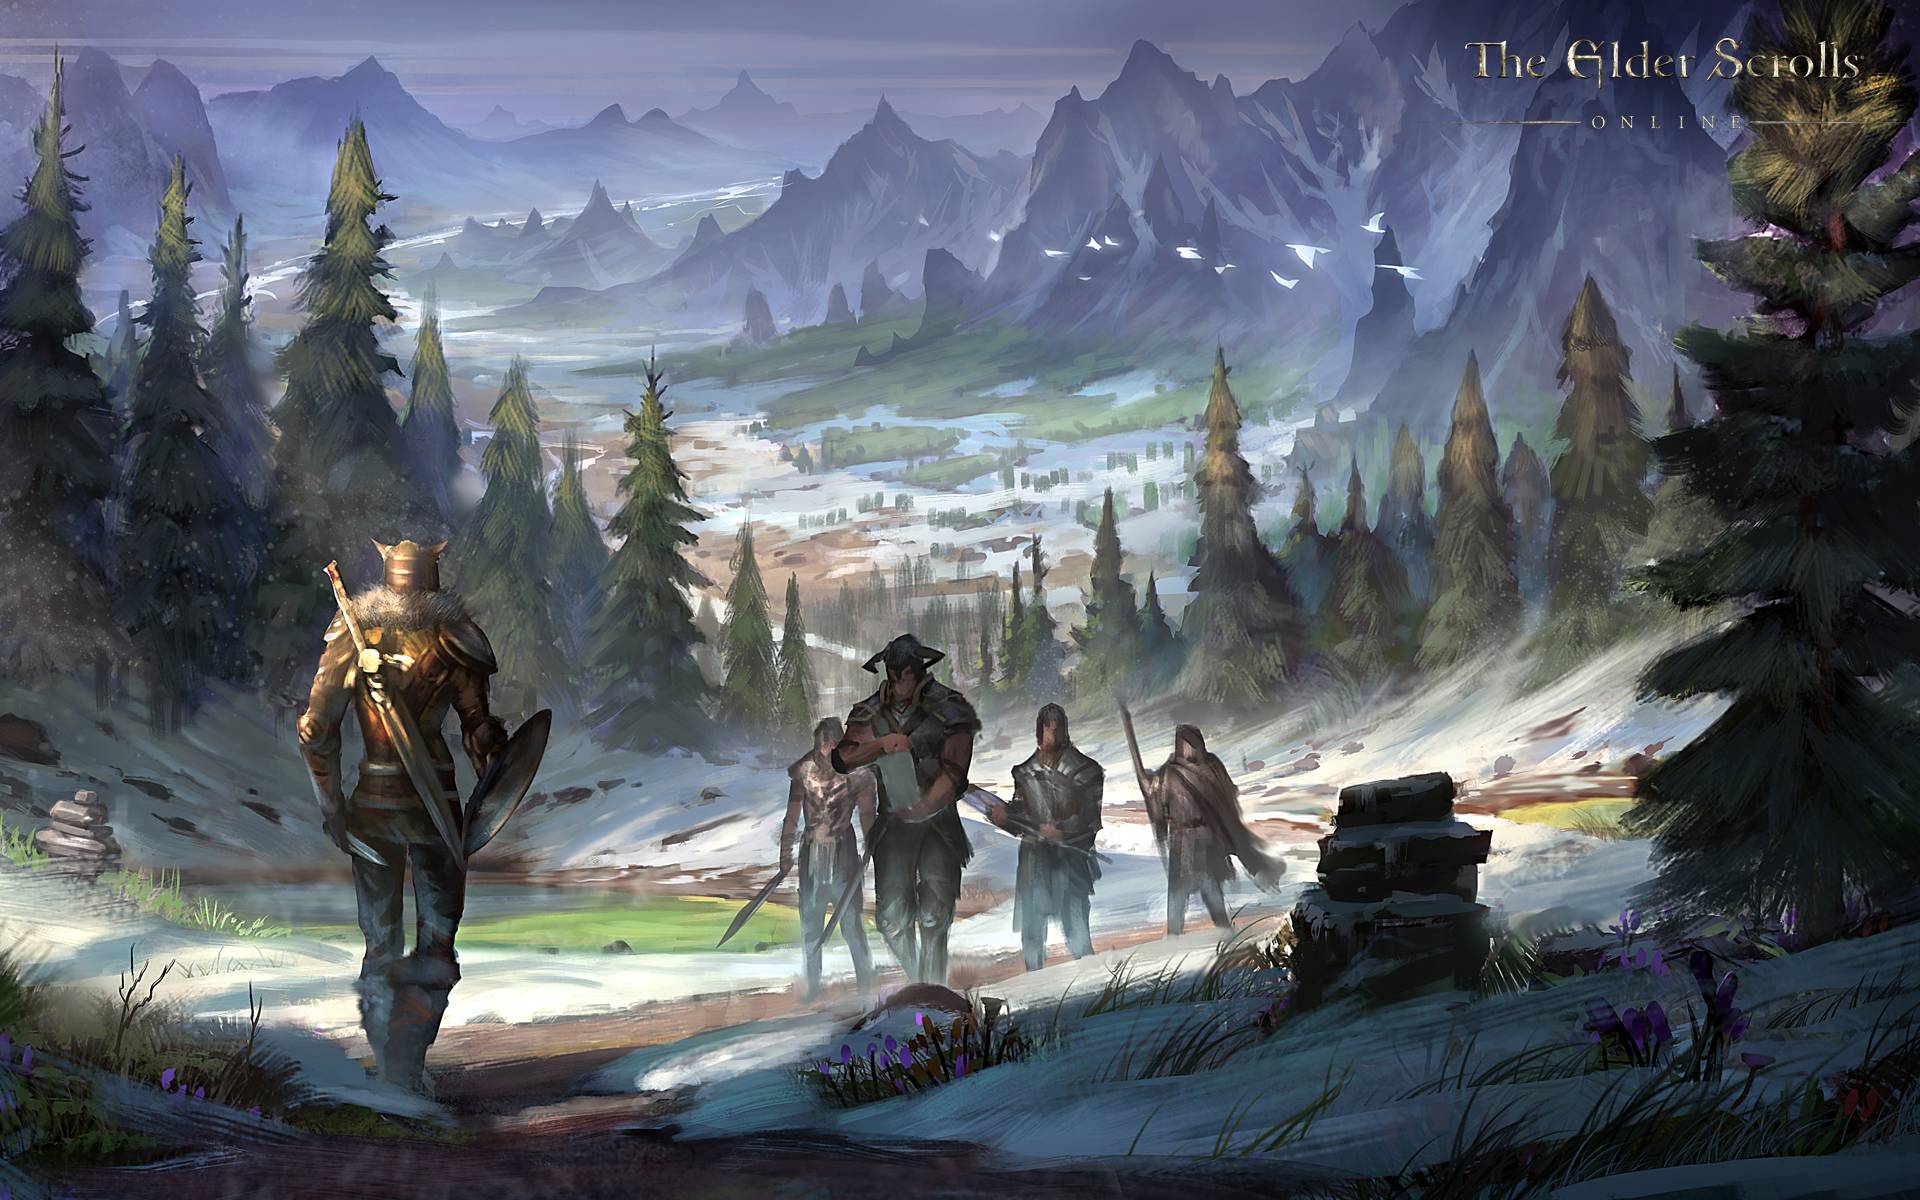 The Elder Scrolls Online Computer Wallpaper, Desktop Background